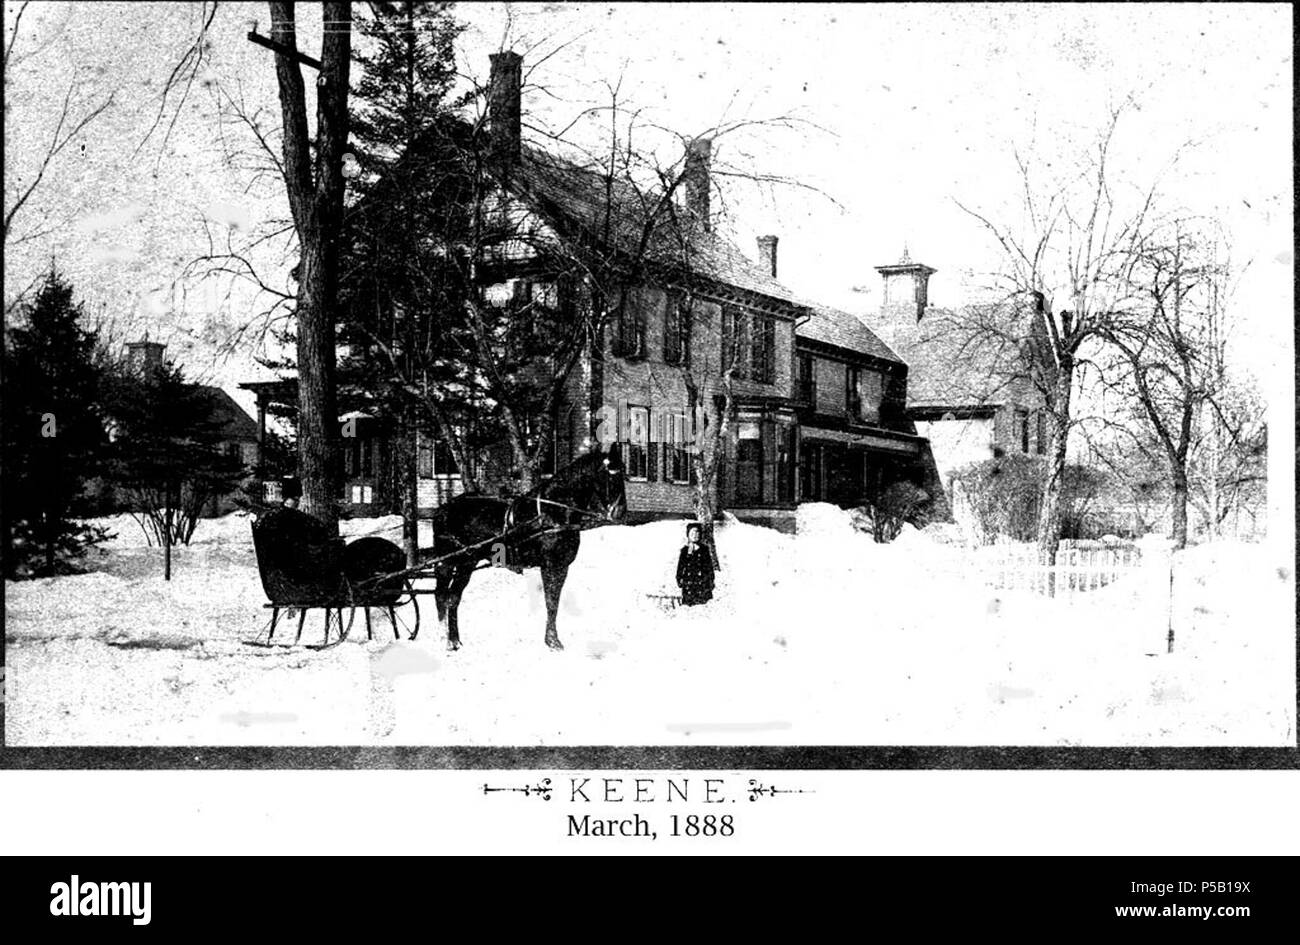 N/A. Titre Blizzard de mars 1888 - Scène à cheval et chariot créateur Français, J.A., Keene NH OBJET Blizzards - NH - Keene NH - Maisons - Keene NH - Neige - Keene DESCRIPTION Scène avec cheval et un chariot à Keene au New Hampshire. 'Photographié pendant la semaine qui suit la grande tempête du 13 mars 1888. Plusieurs des points de vue ont été faites avant la charrue ou la pelle avaient perturbé la dérive, et d'autres après les rues et promenades ont été ouverts.' se réfère à la légende EDITEUR Keene Public Library et la Société historique du comté de Cheshire NUMÉRIQUE DATE DATE 20090713 TYPE DE RESSOURCE photograp ORIGINAL 1888 Banque D'Images